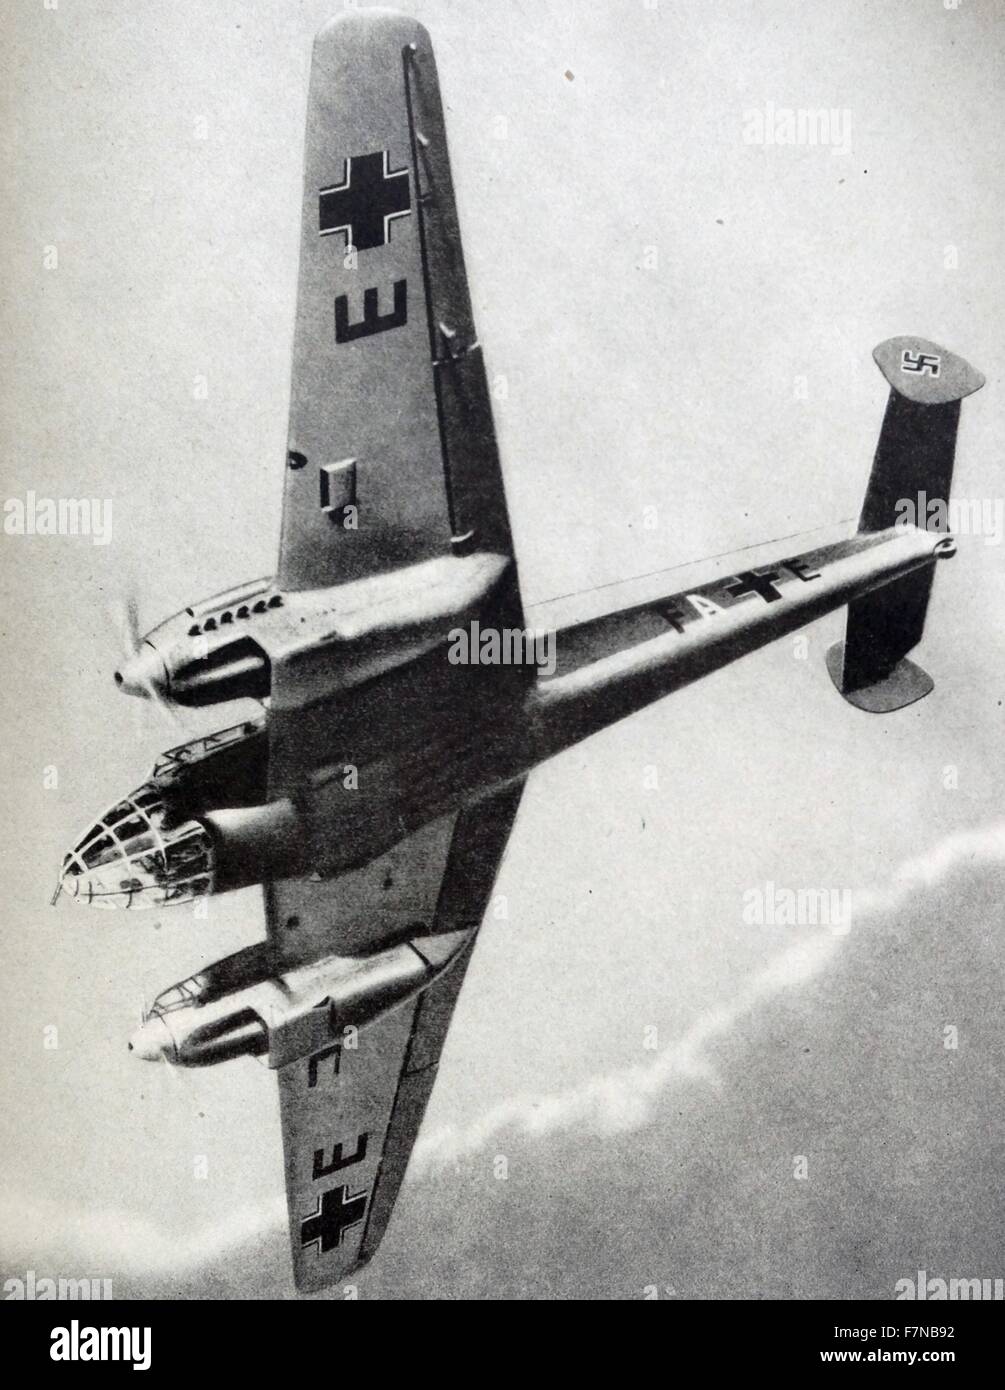 Photographie d'une fissure Fighter-Bomber de la Luftwaffe. Datée 1940 Banque D'Images